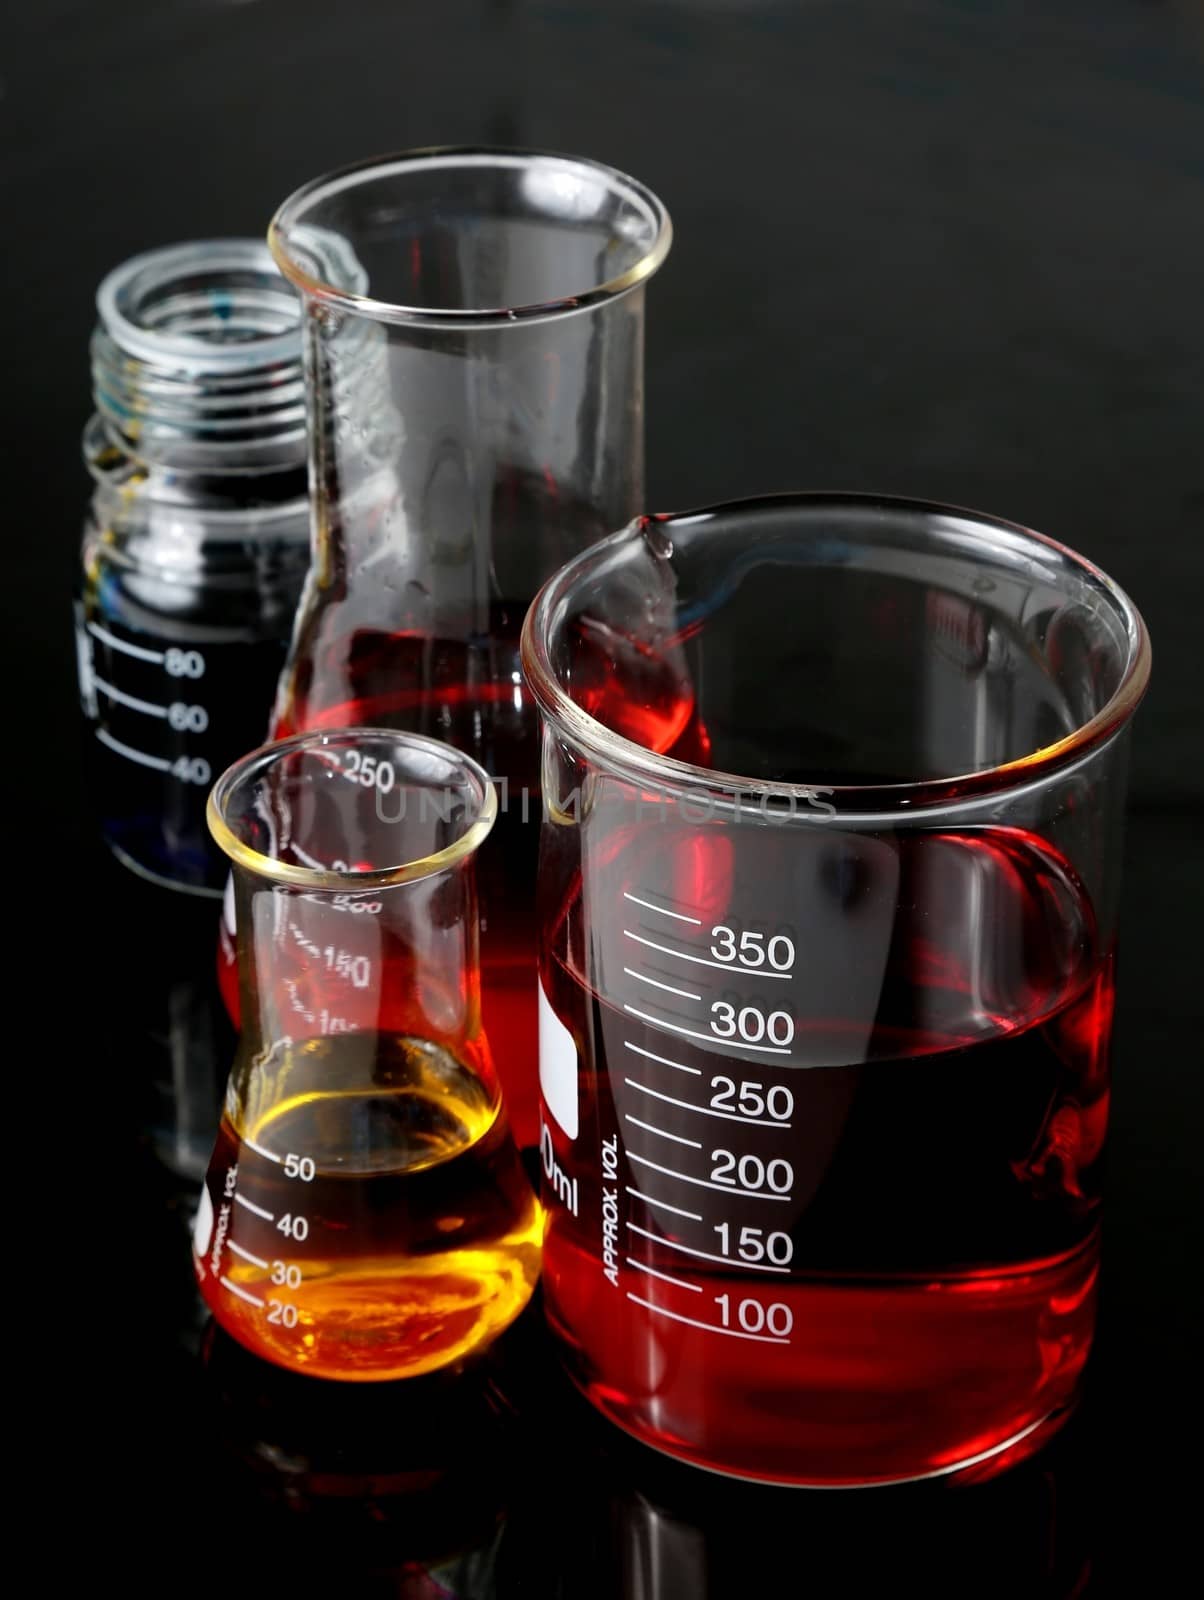 Laboratory Flasks Glassware by fouroaks